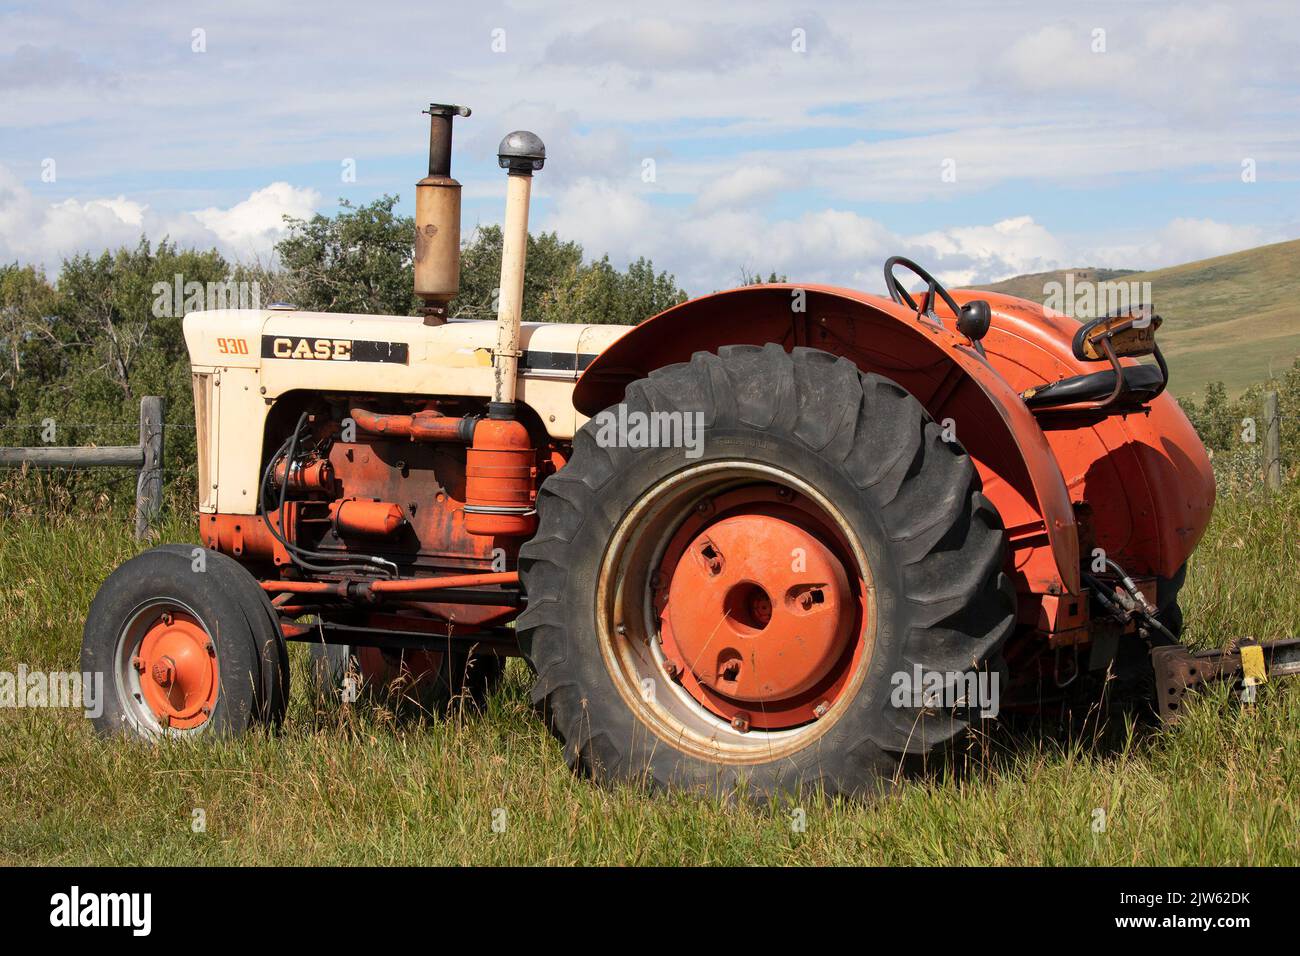 Machines agricoles anciennes dans un champ du lieu historique national du Ranch-Bar U, dans le sud de l'Alberta, au Canada. Tracteur case 930 vintage Banque D'Images